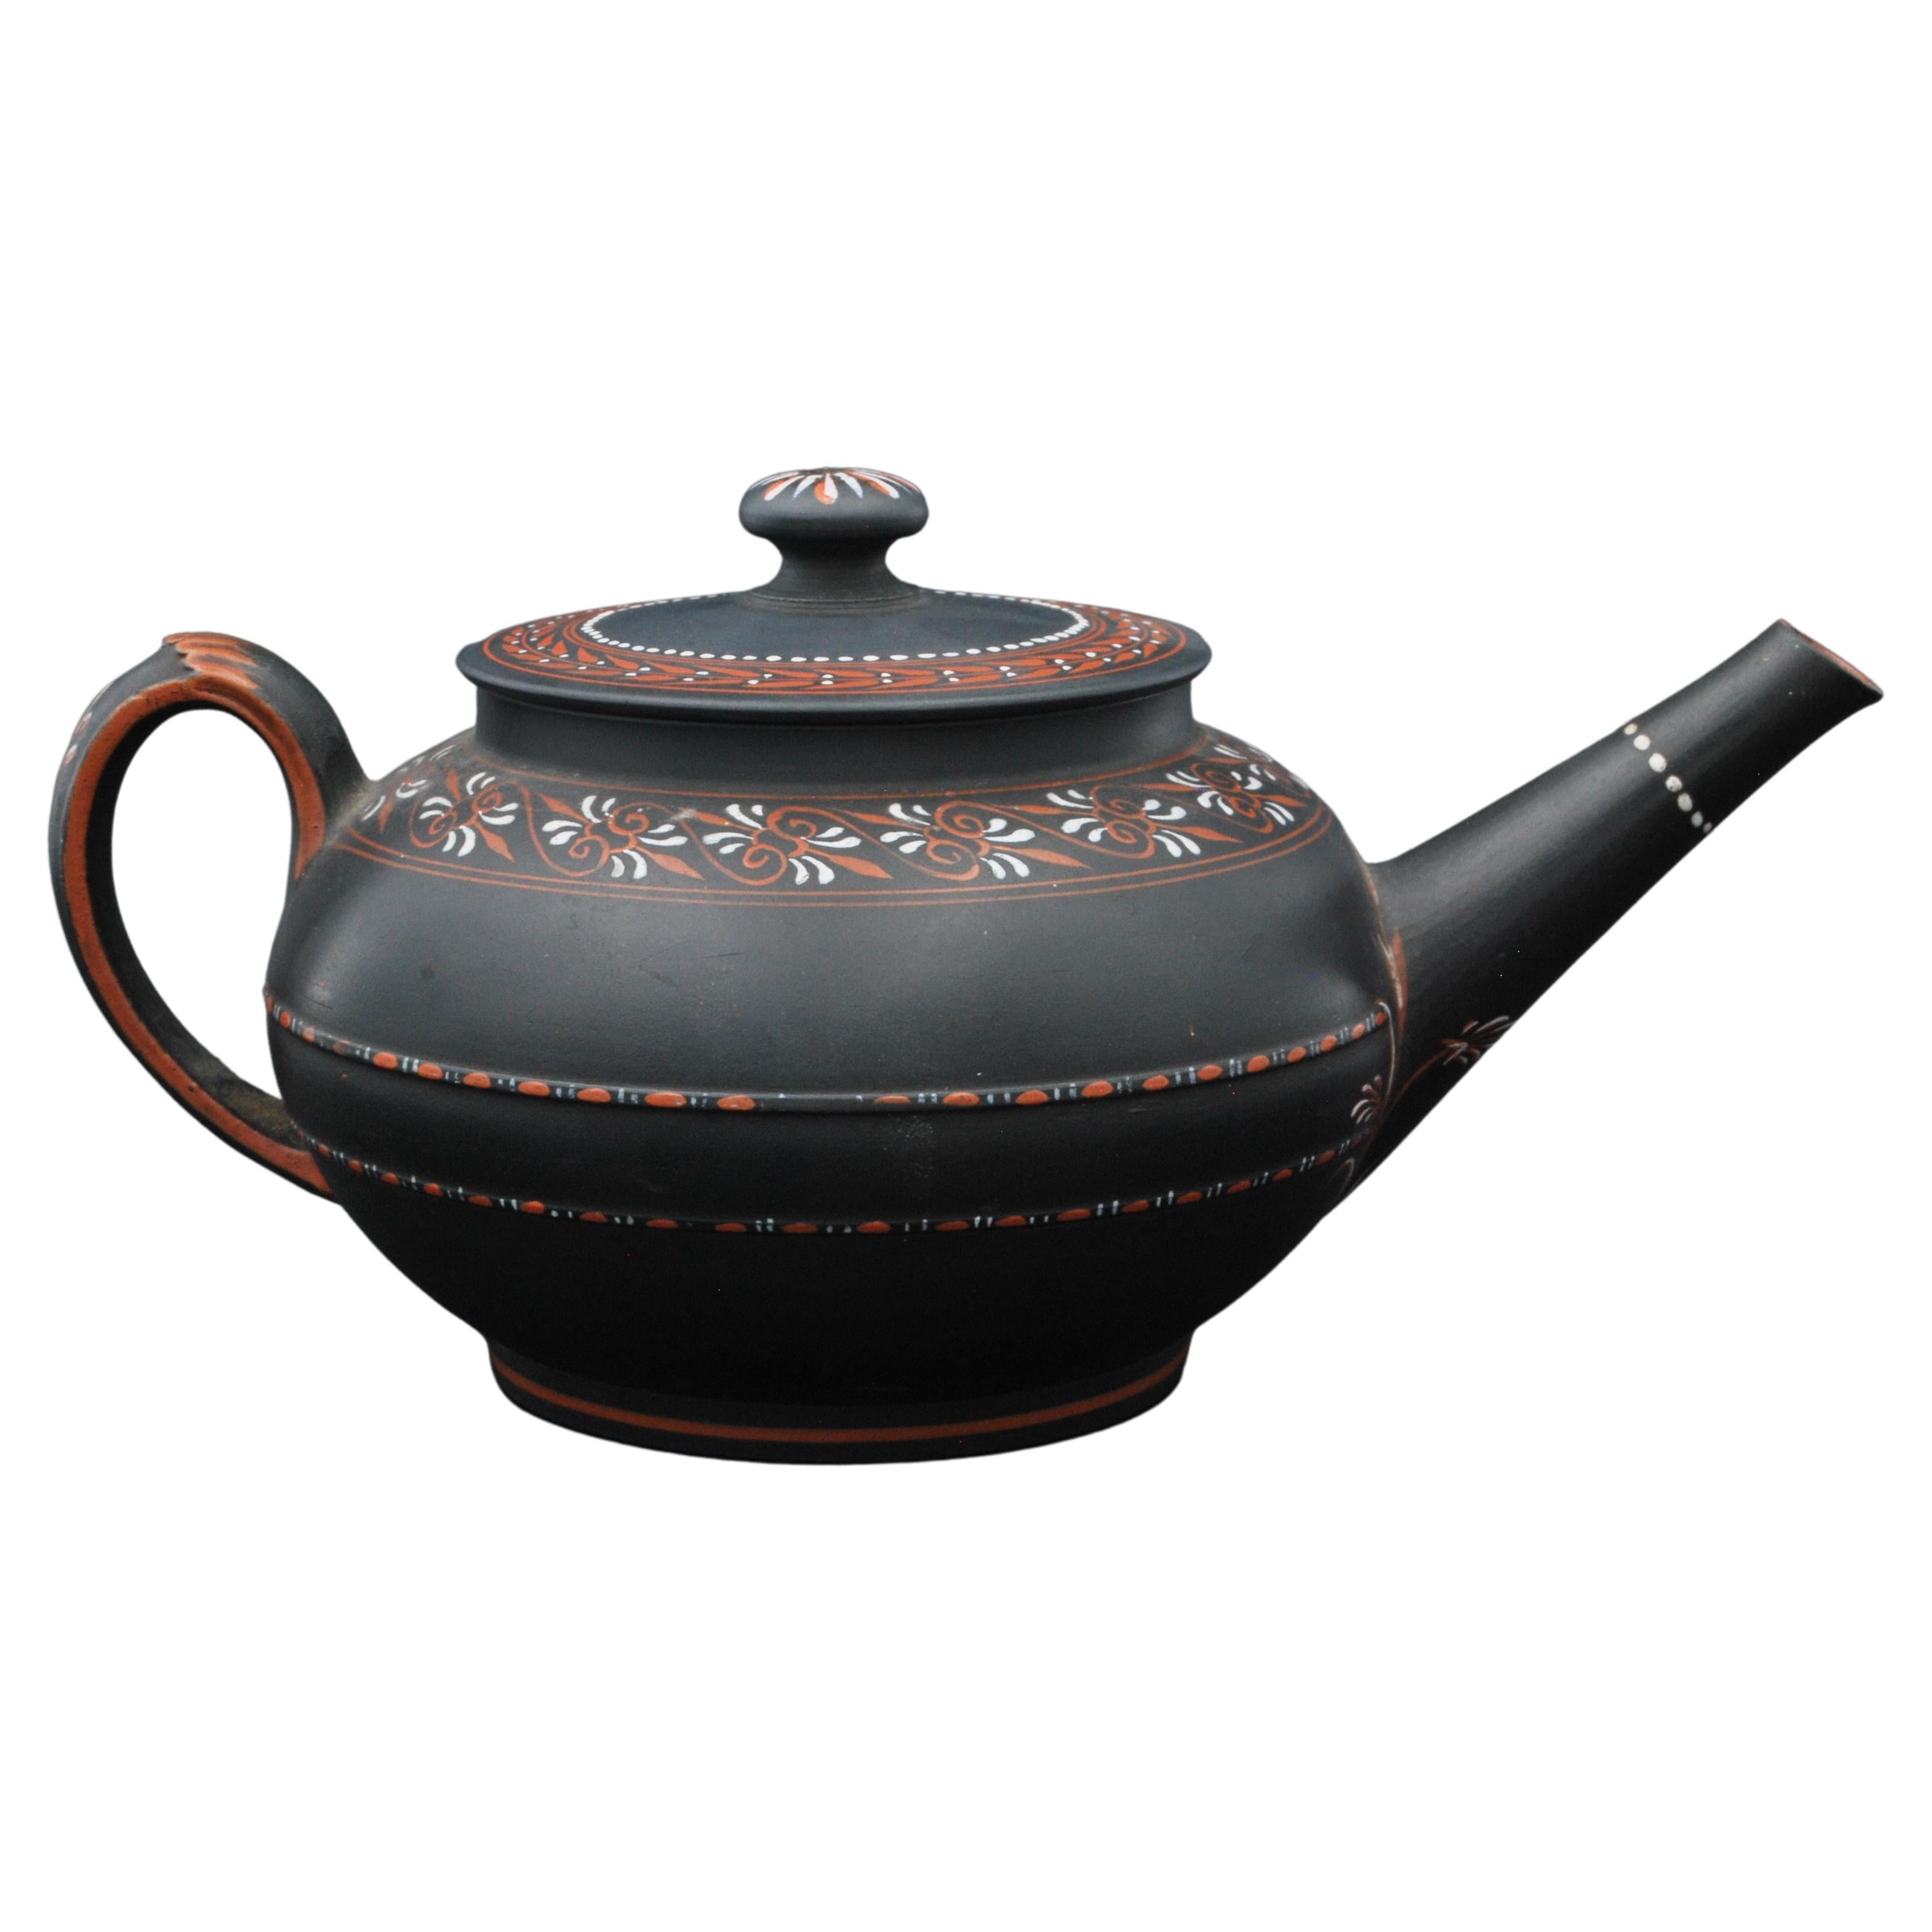 Encaustic Painted Teapot in Black Basalt, Wedgwood C1780 For Sale